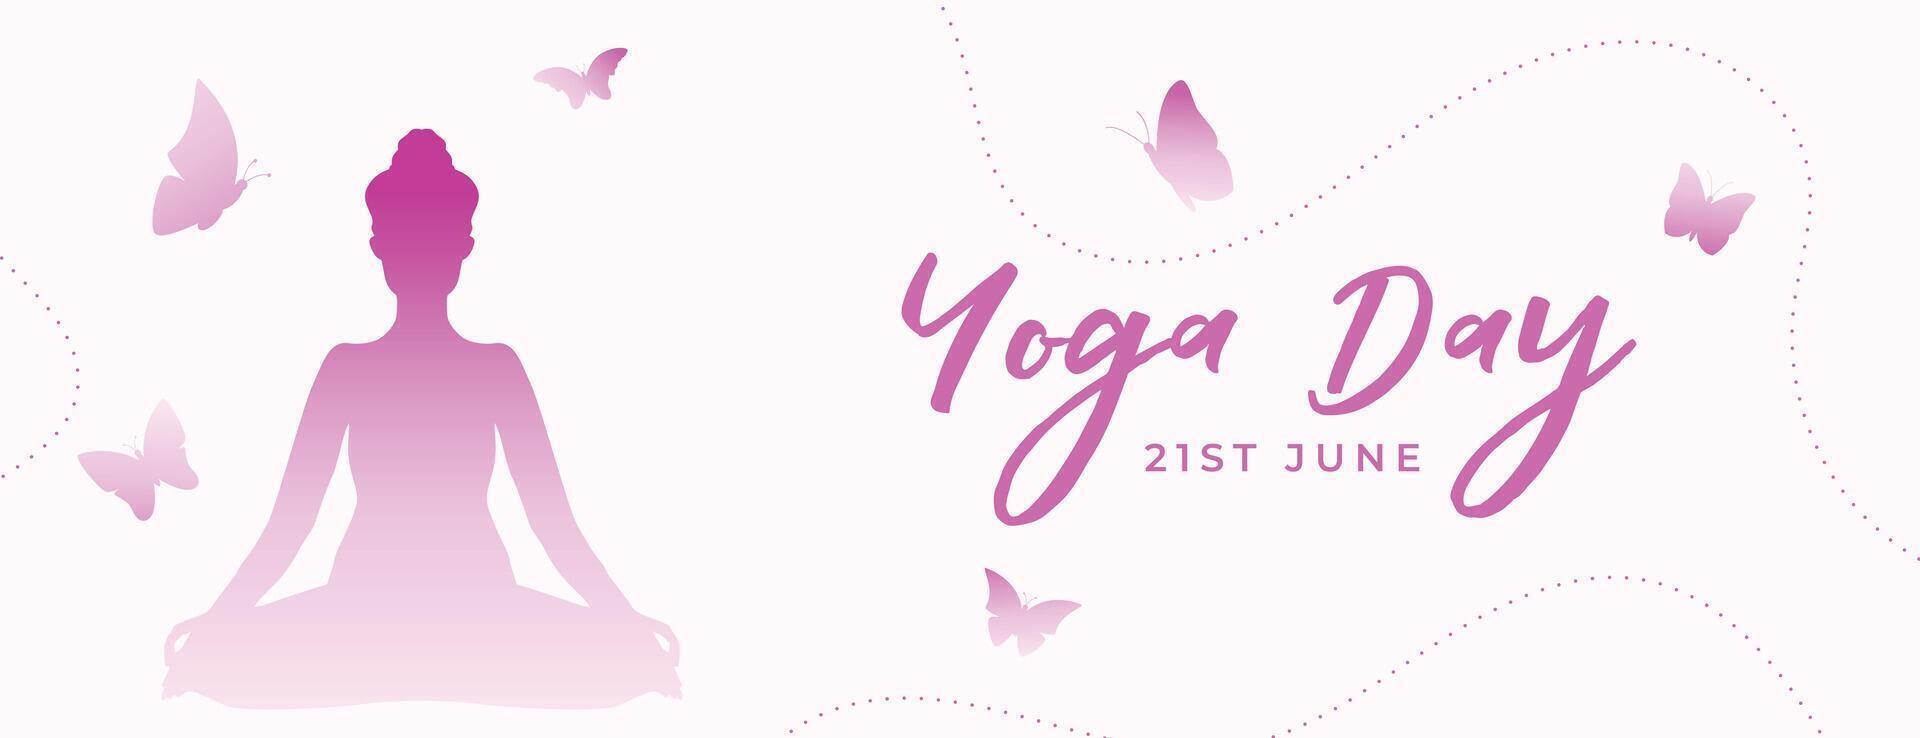 moderno 21 junio yoga día evento bandera con linda mariposa diseño vector